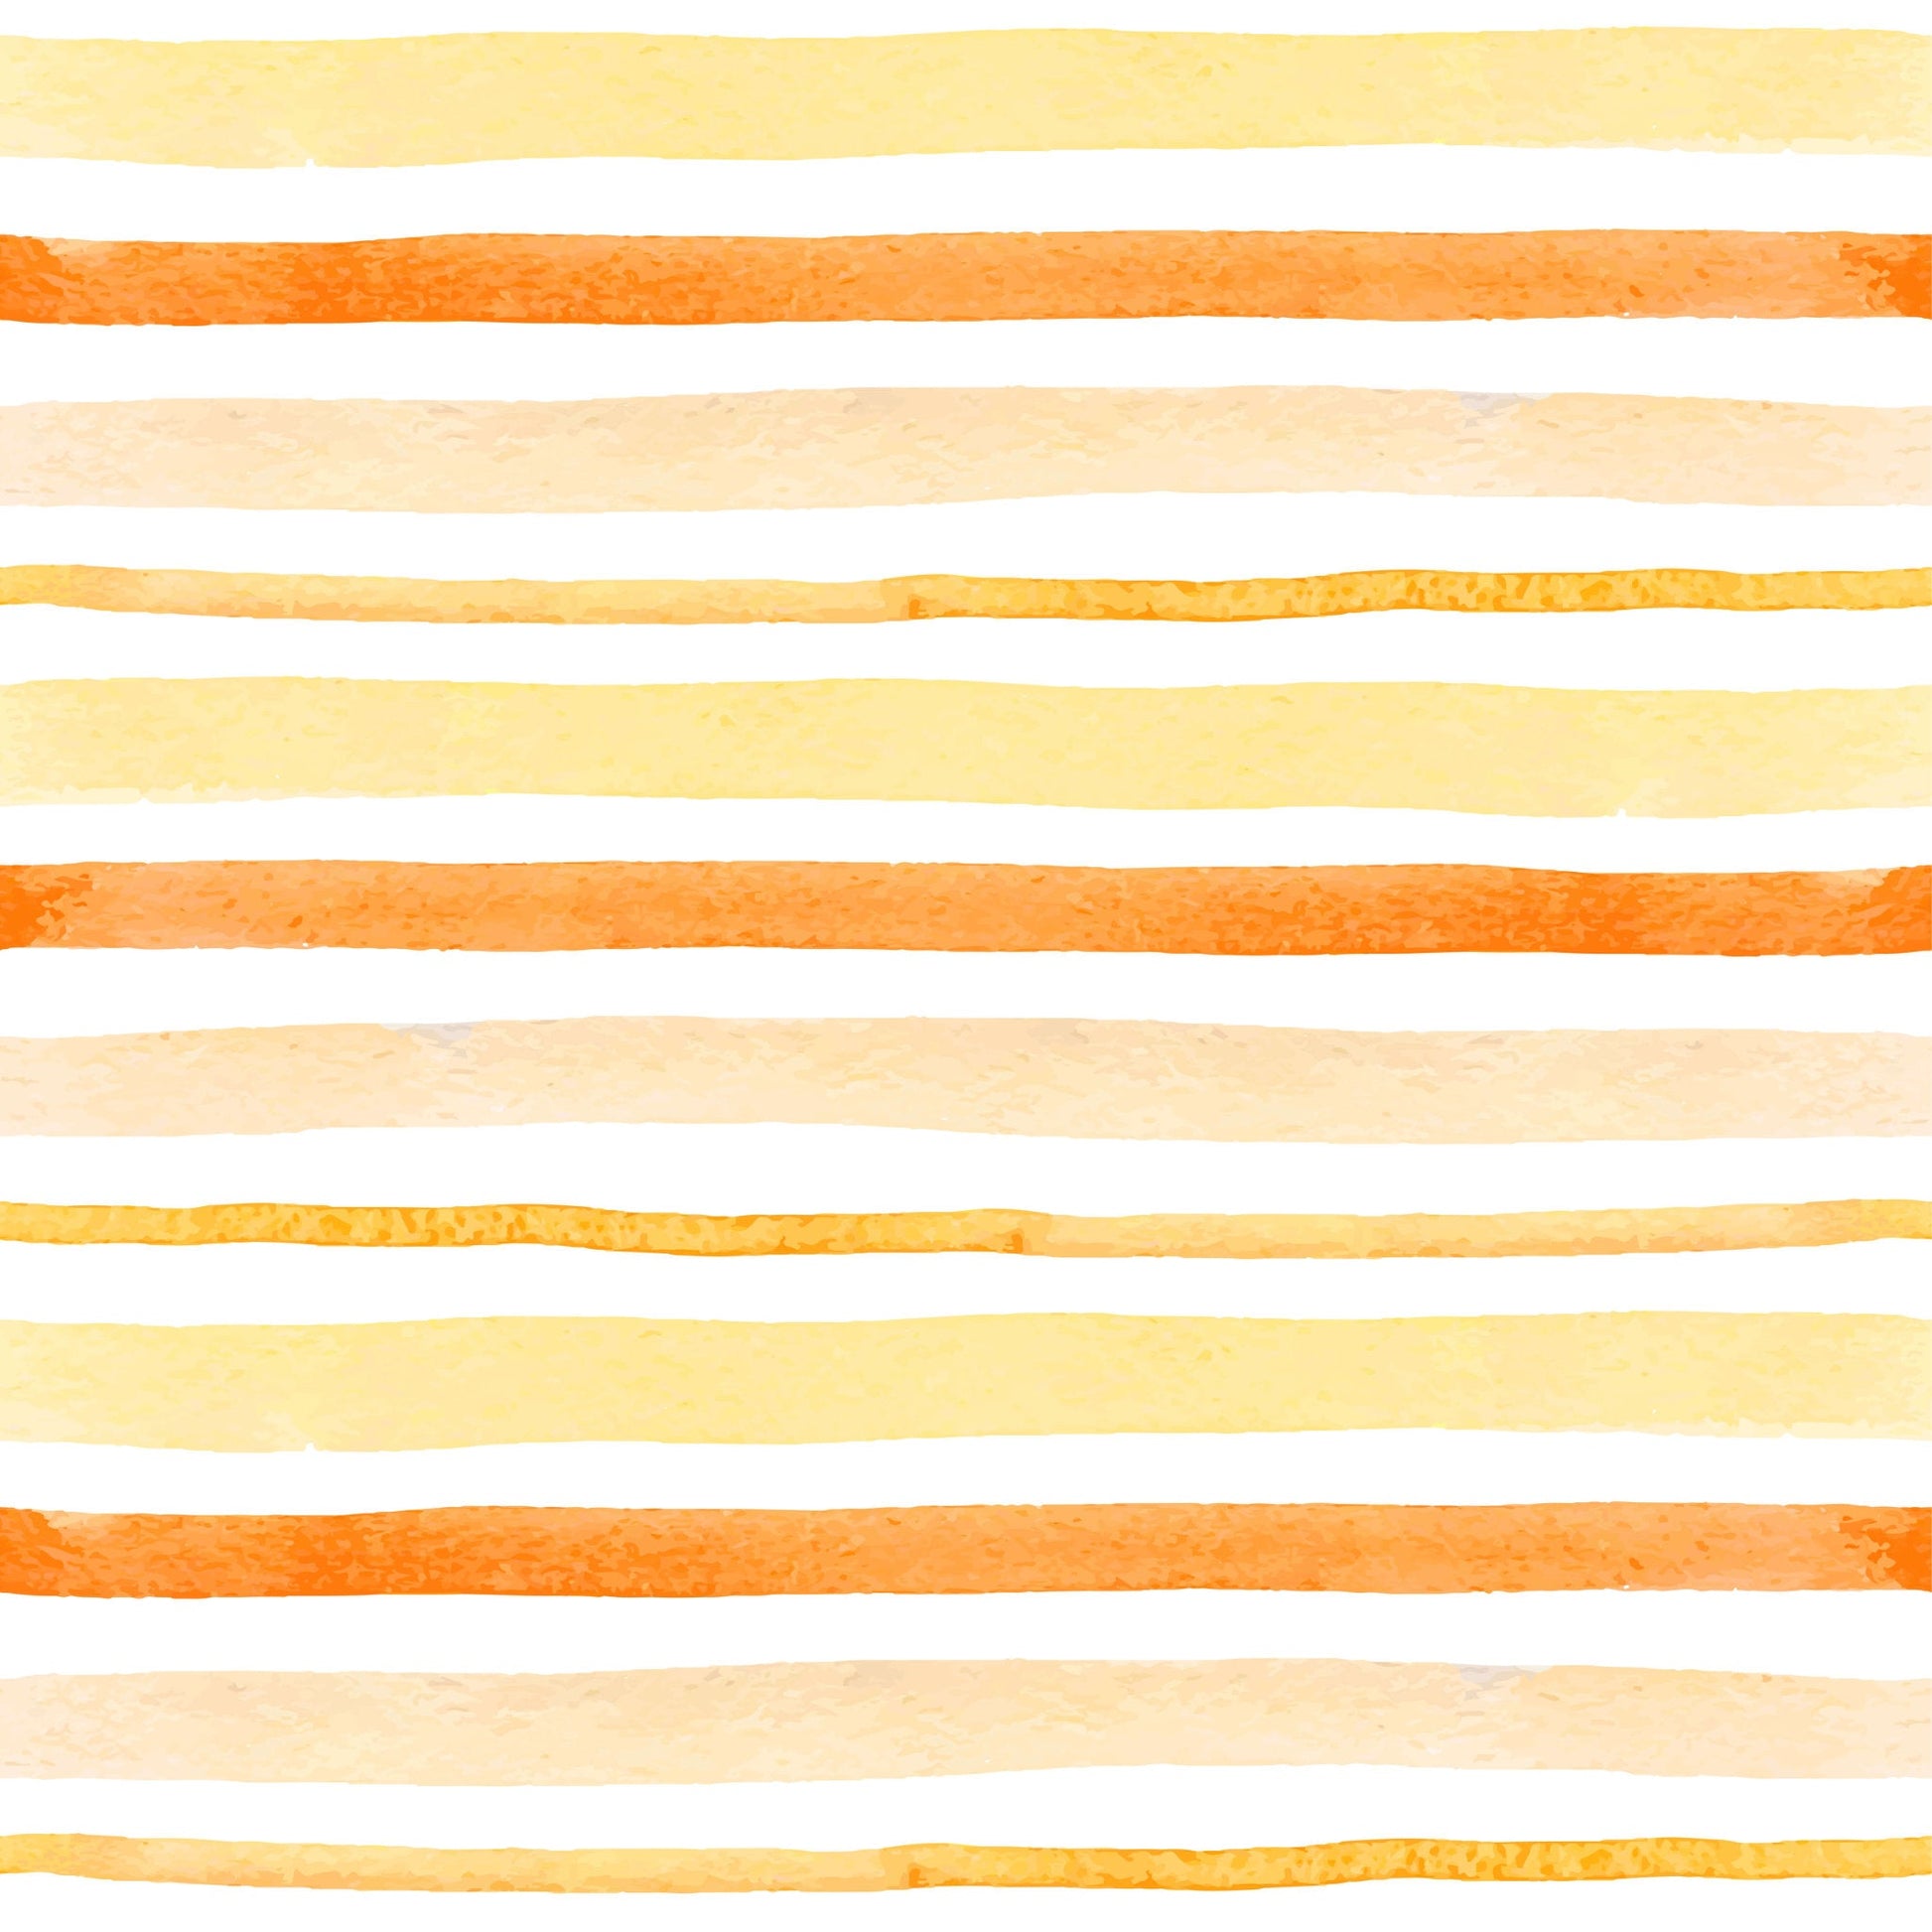 cushion back orange and yellow stripes on white base fabric